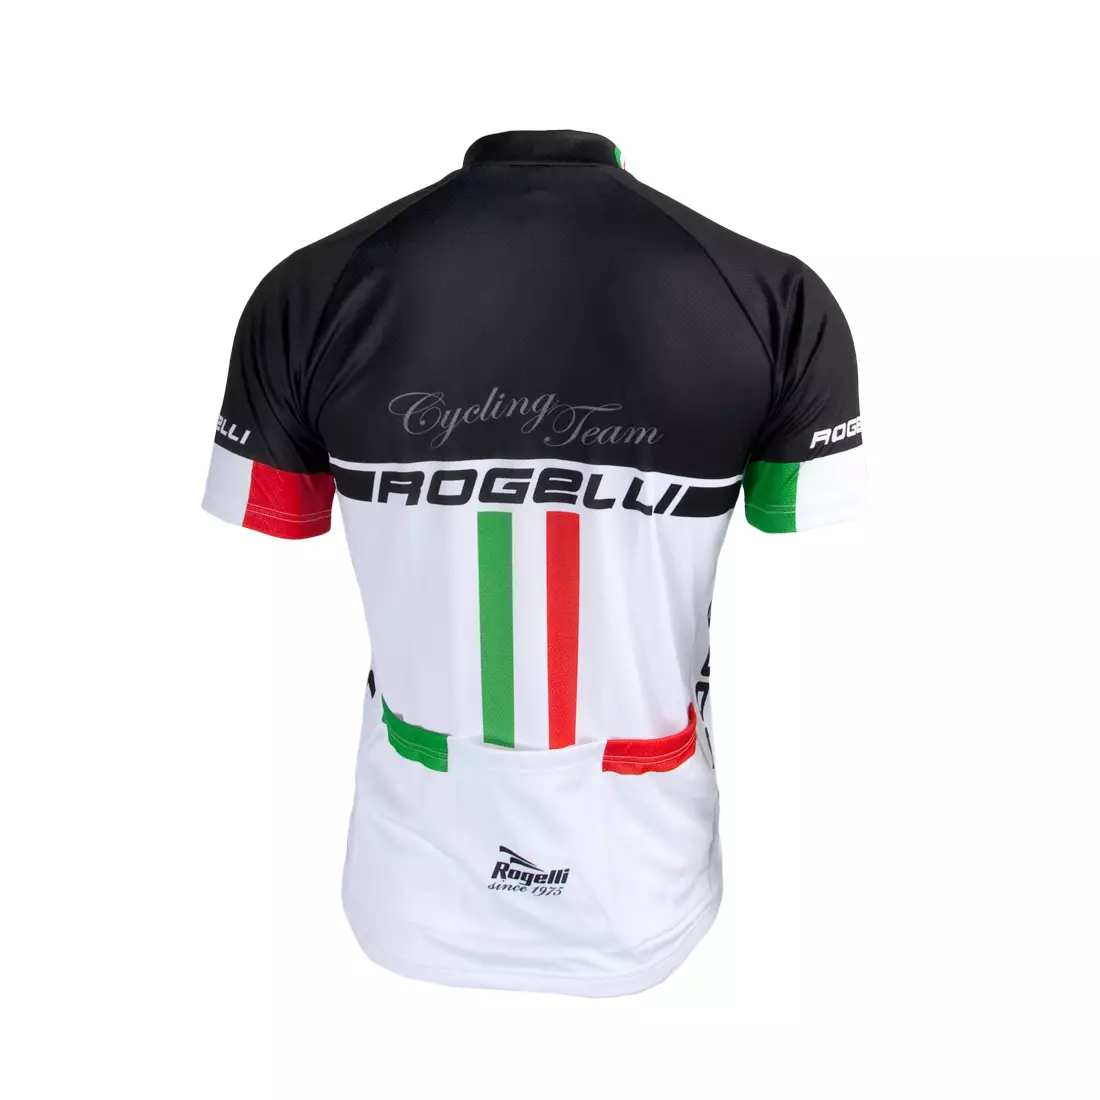 ROGELLI - CYCLING TEAM - férfi kerékpáros mez